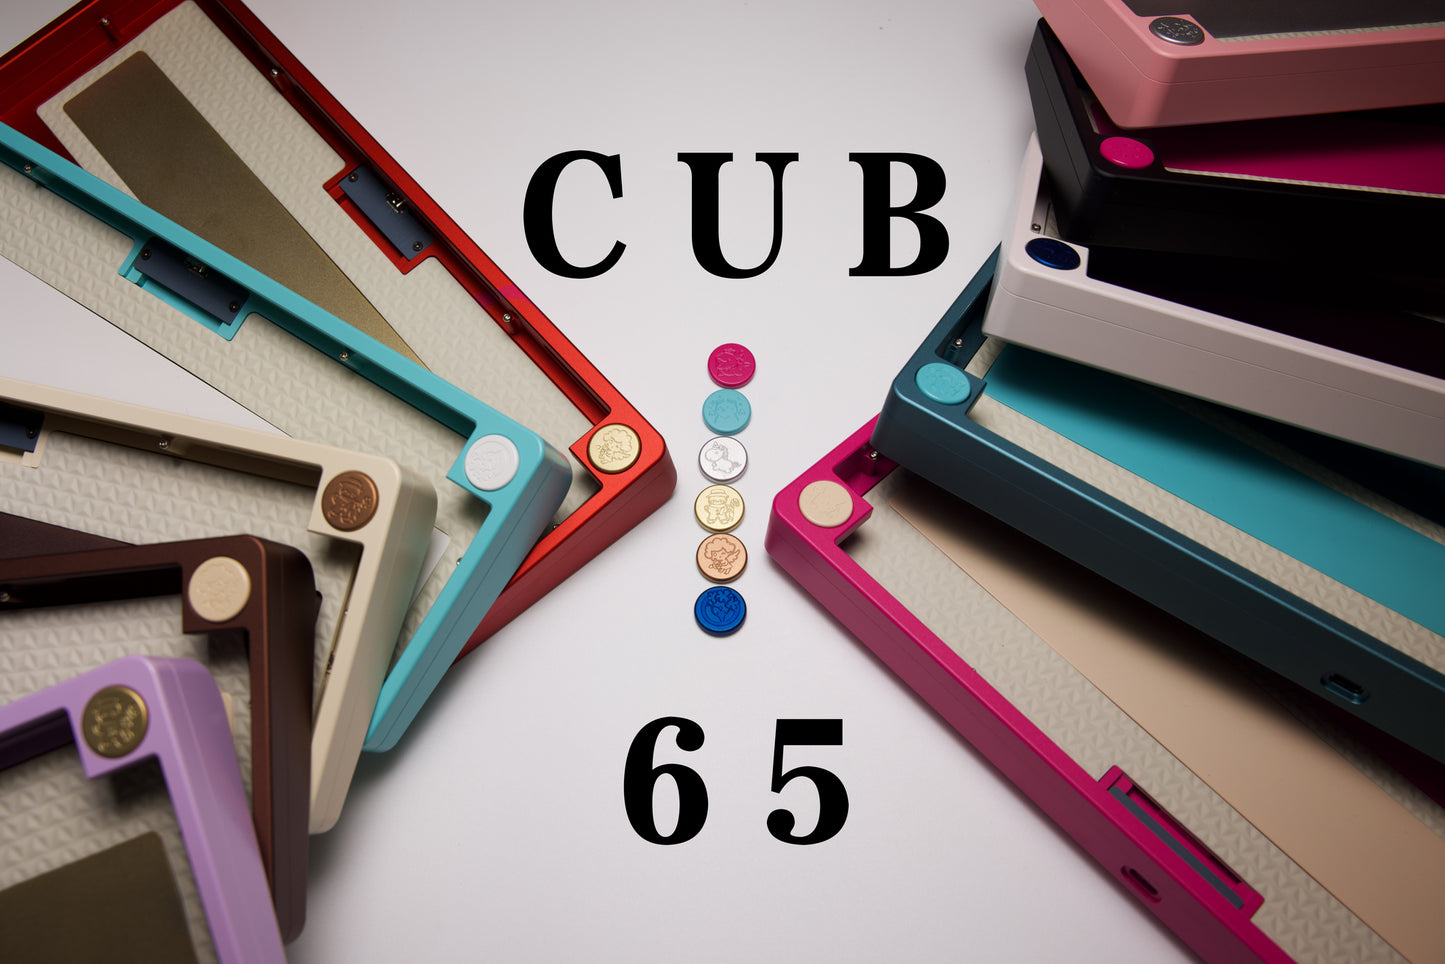 [Extras] Cub65 Case